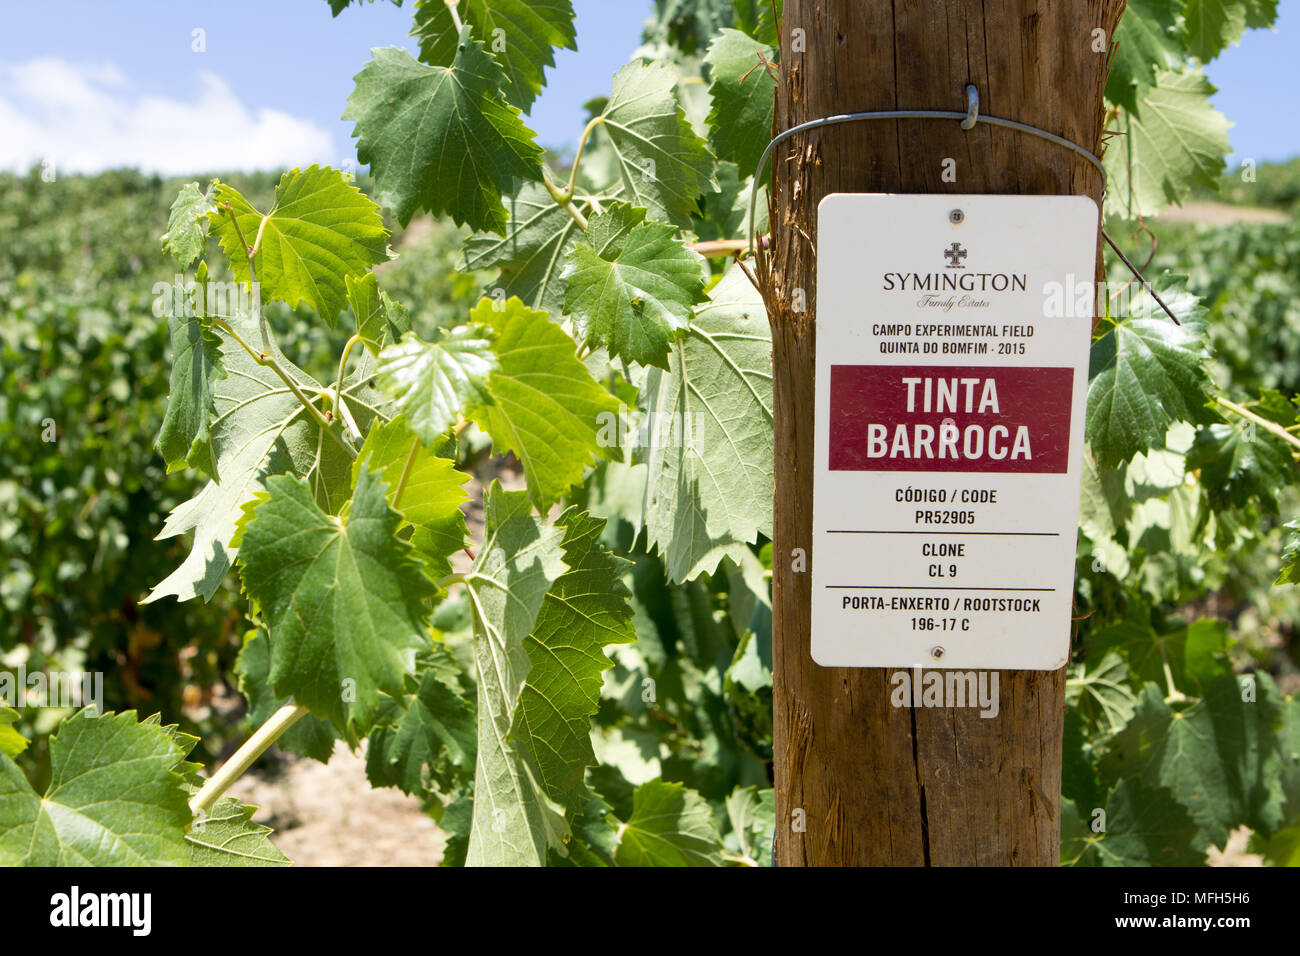 Tinta Barroca grape variety Stock Photo